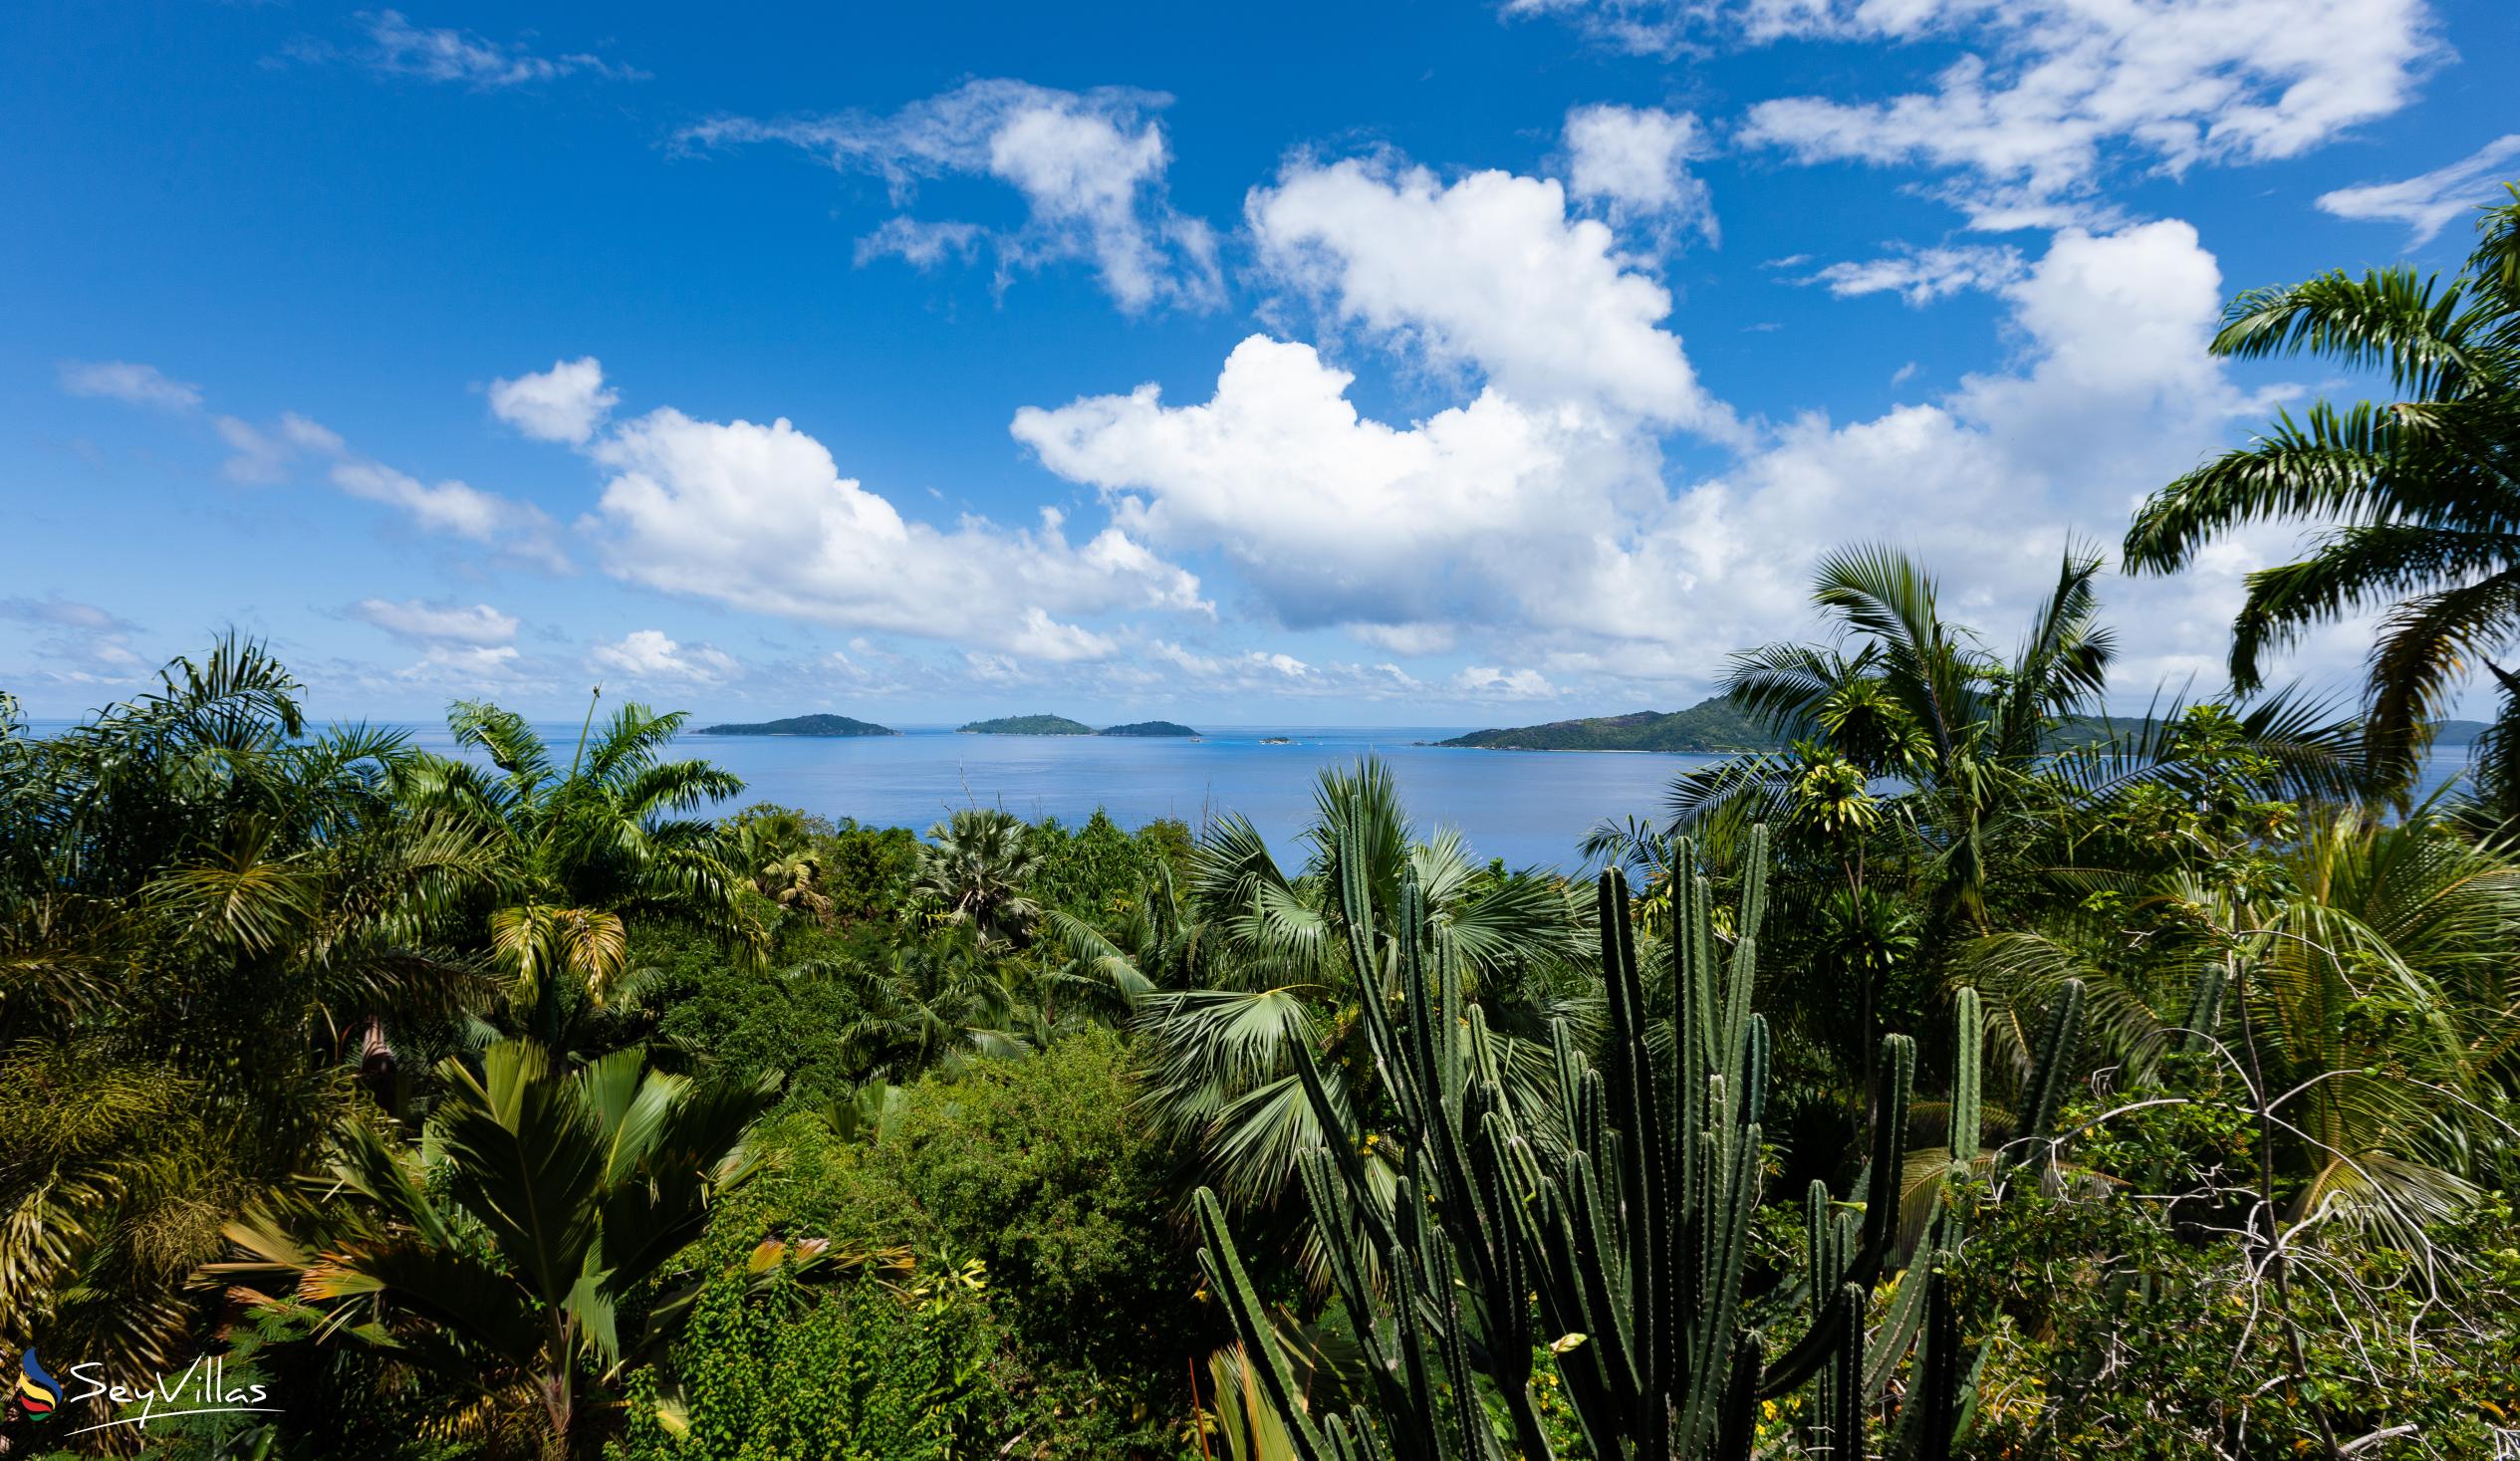 Foto 16: Secret Villa - Location - La Digue (Seychelles)